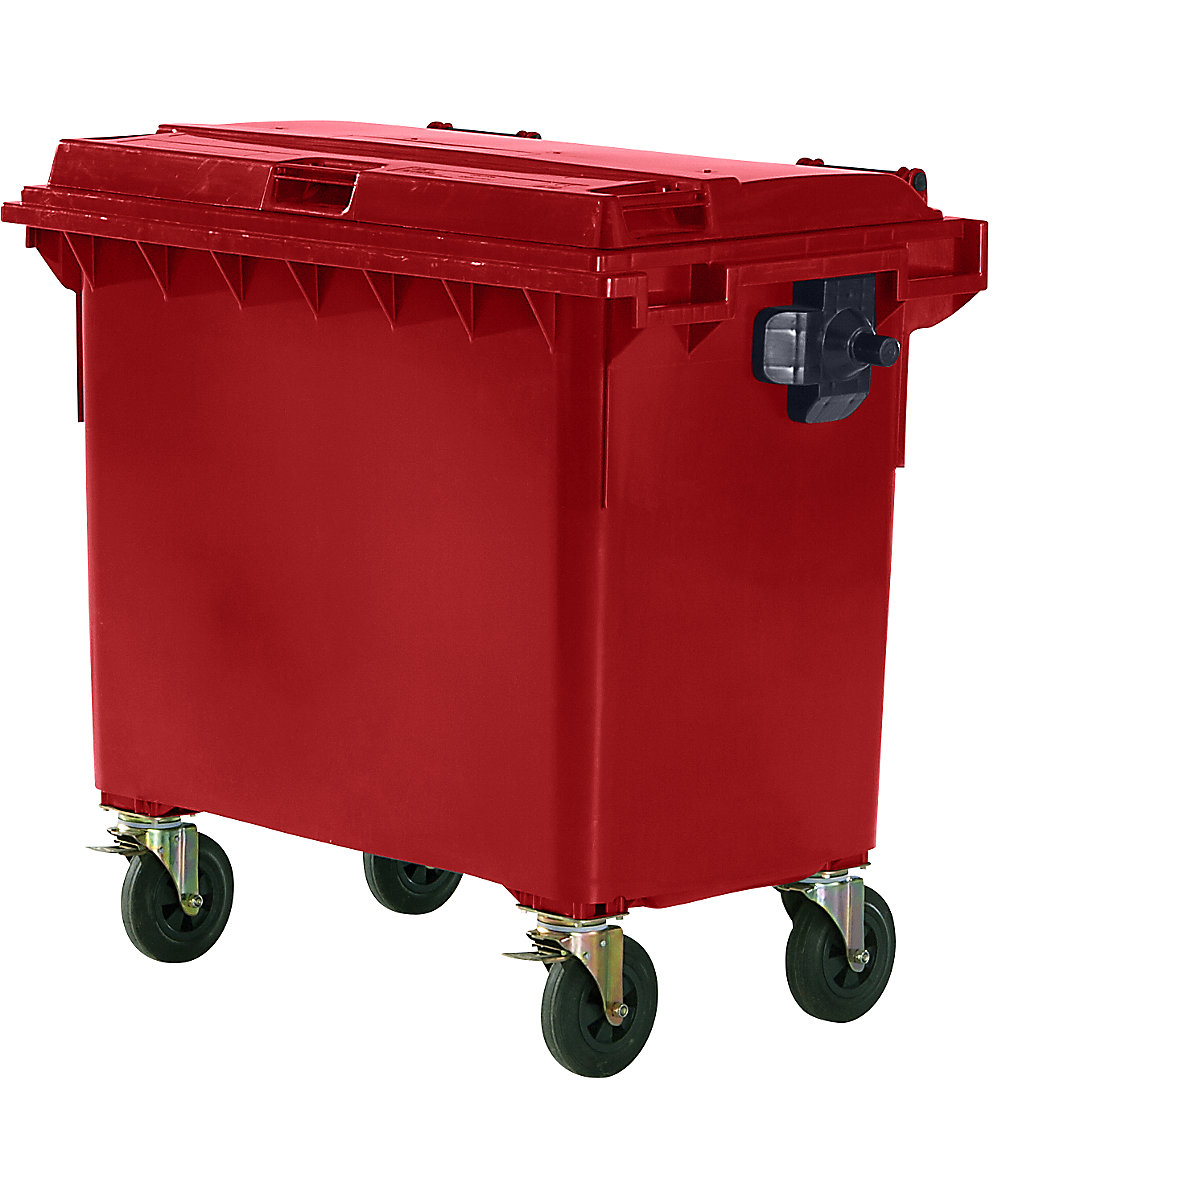 Conteneur à ordures en plastique conforme DIN EN 840, capacité 660 l, l x h x p 1360 x 1235 x 765 mm, rouge